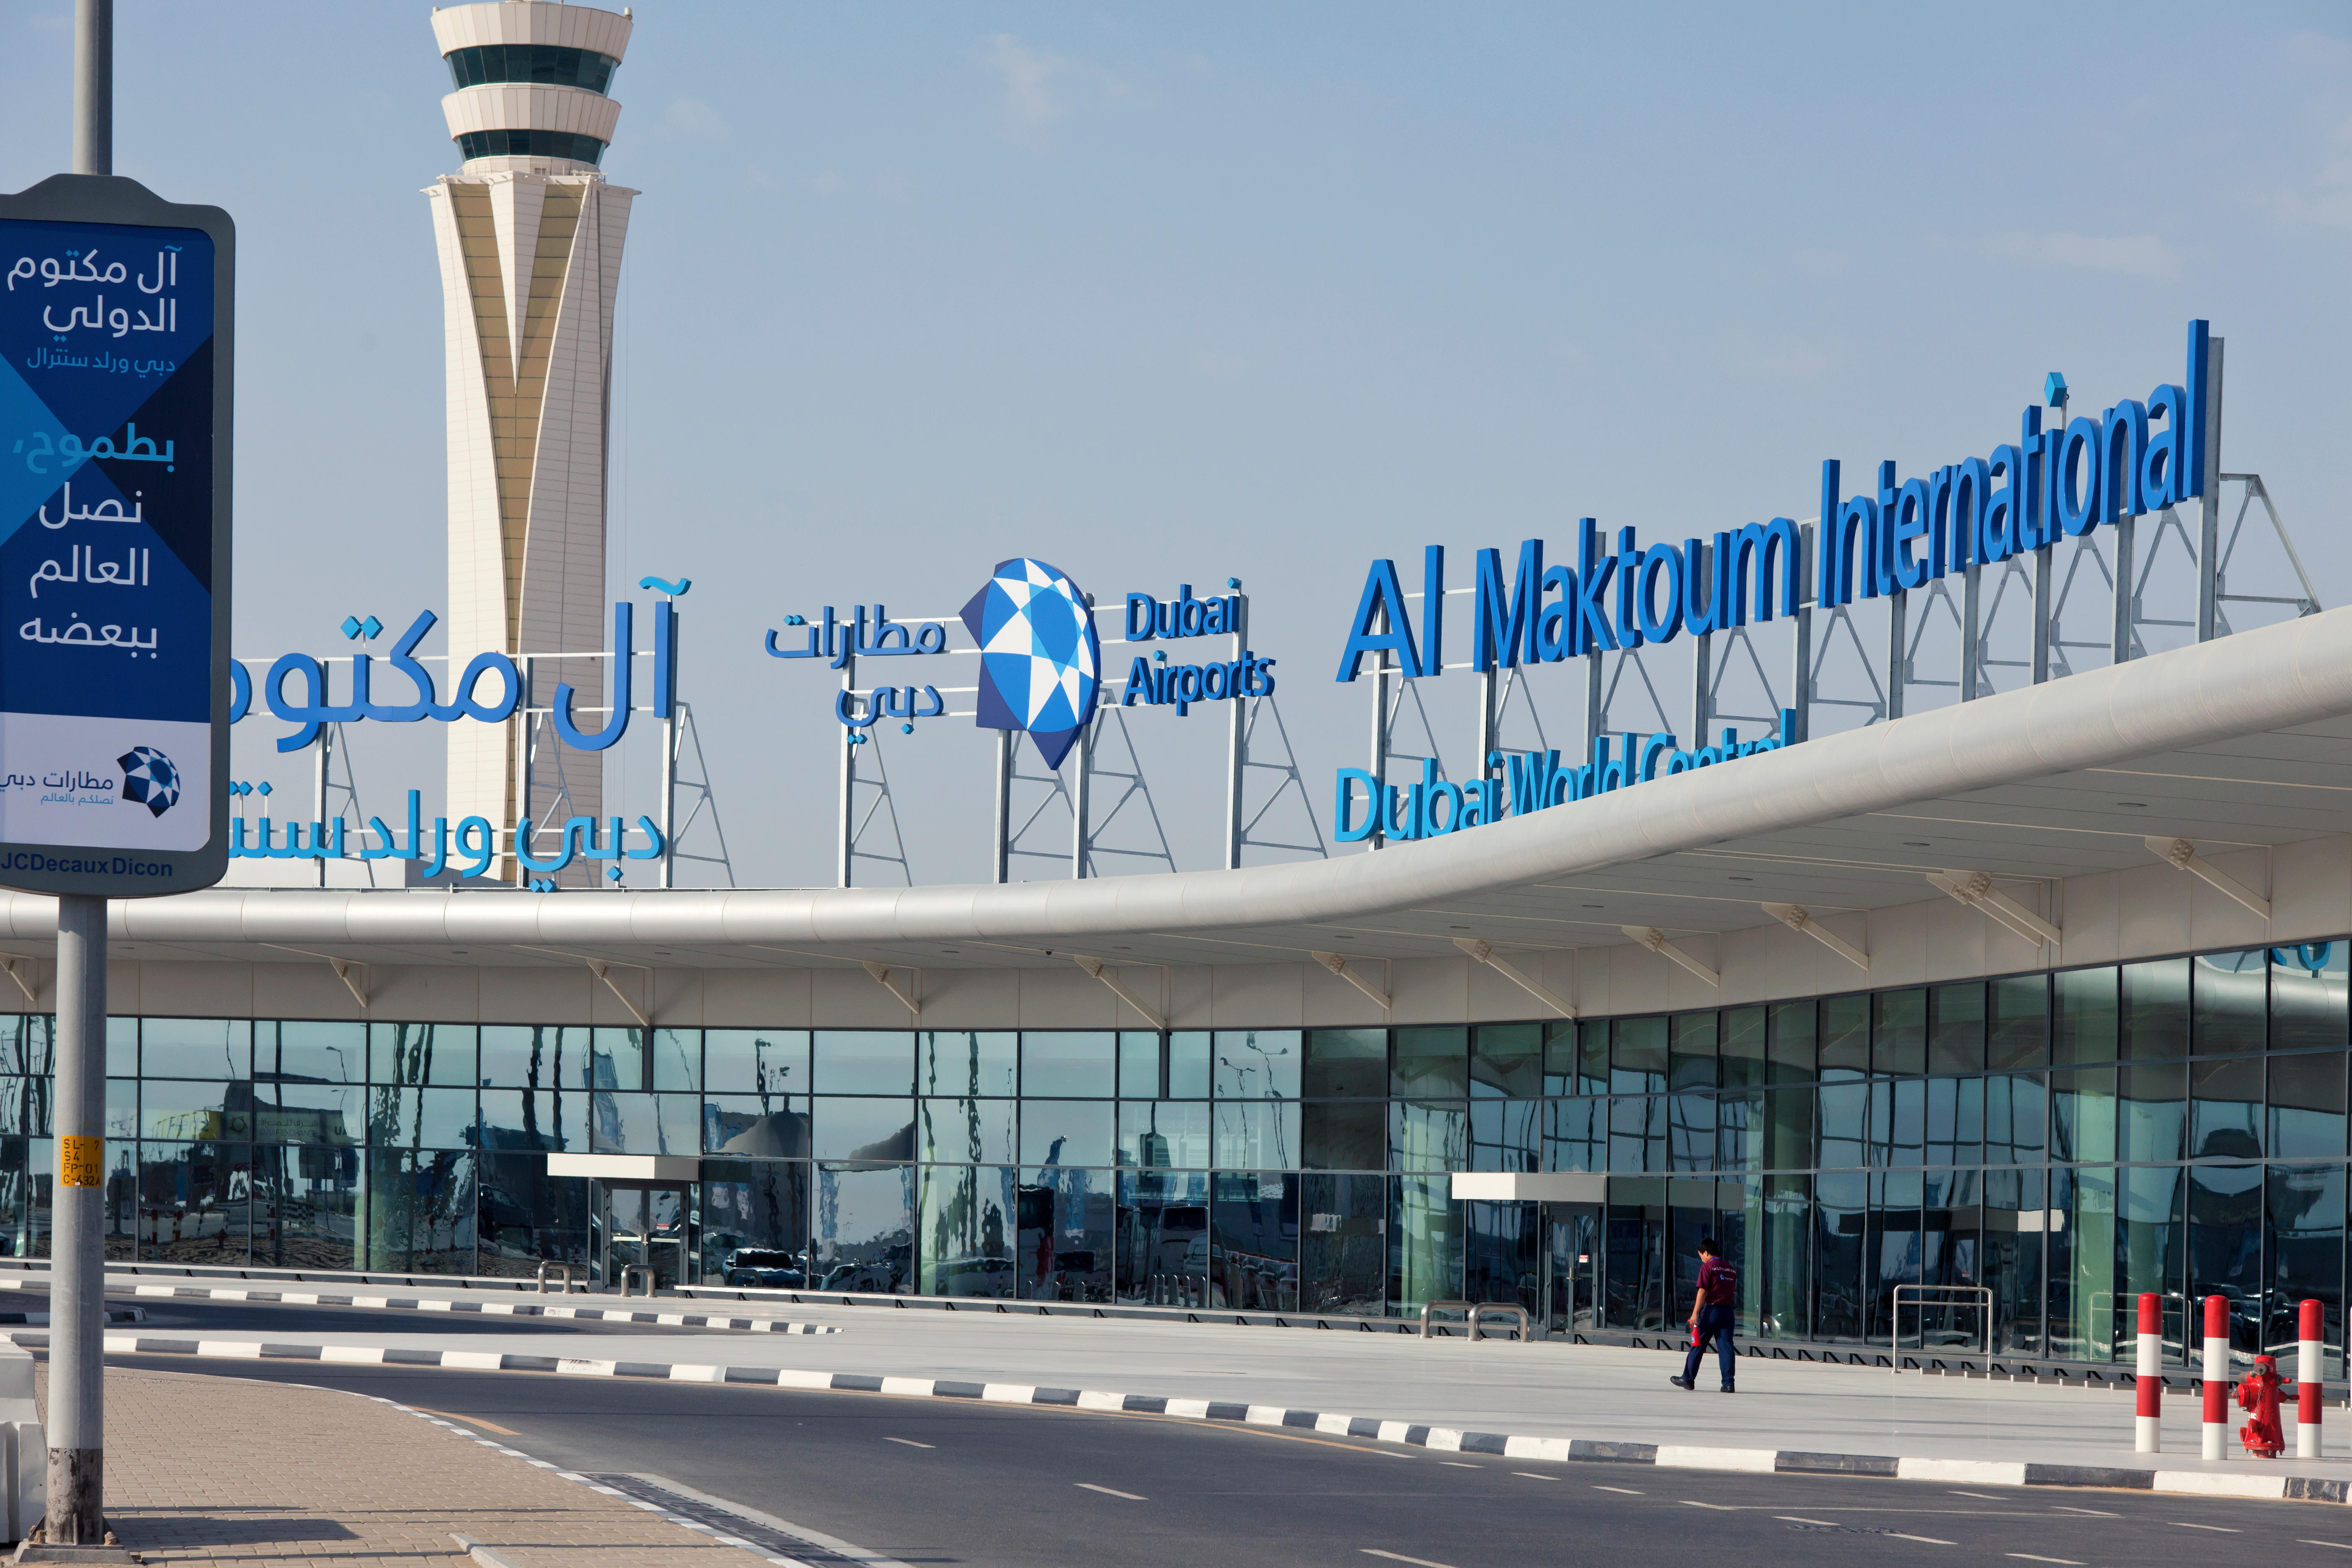 Al Maktoum International Airport first started welcoming passenger flights in 2013